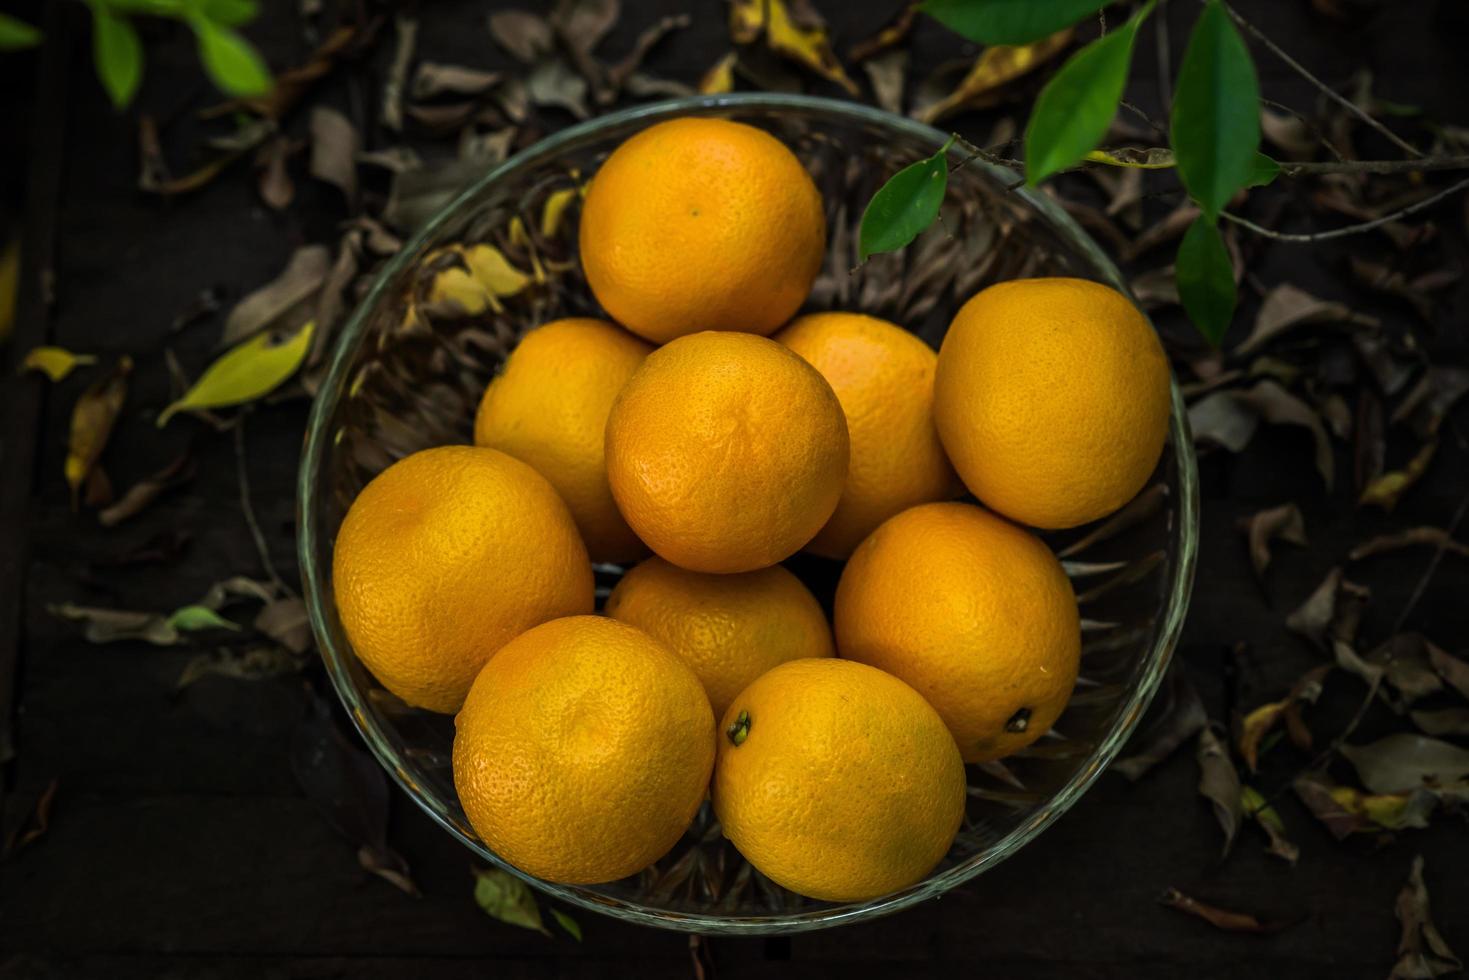 ein Korb mit frischen Orangen in der Natur foto